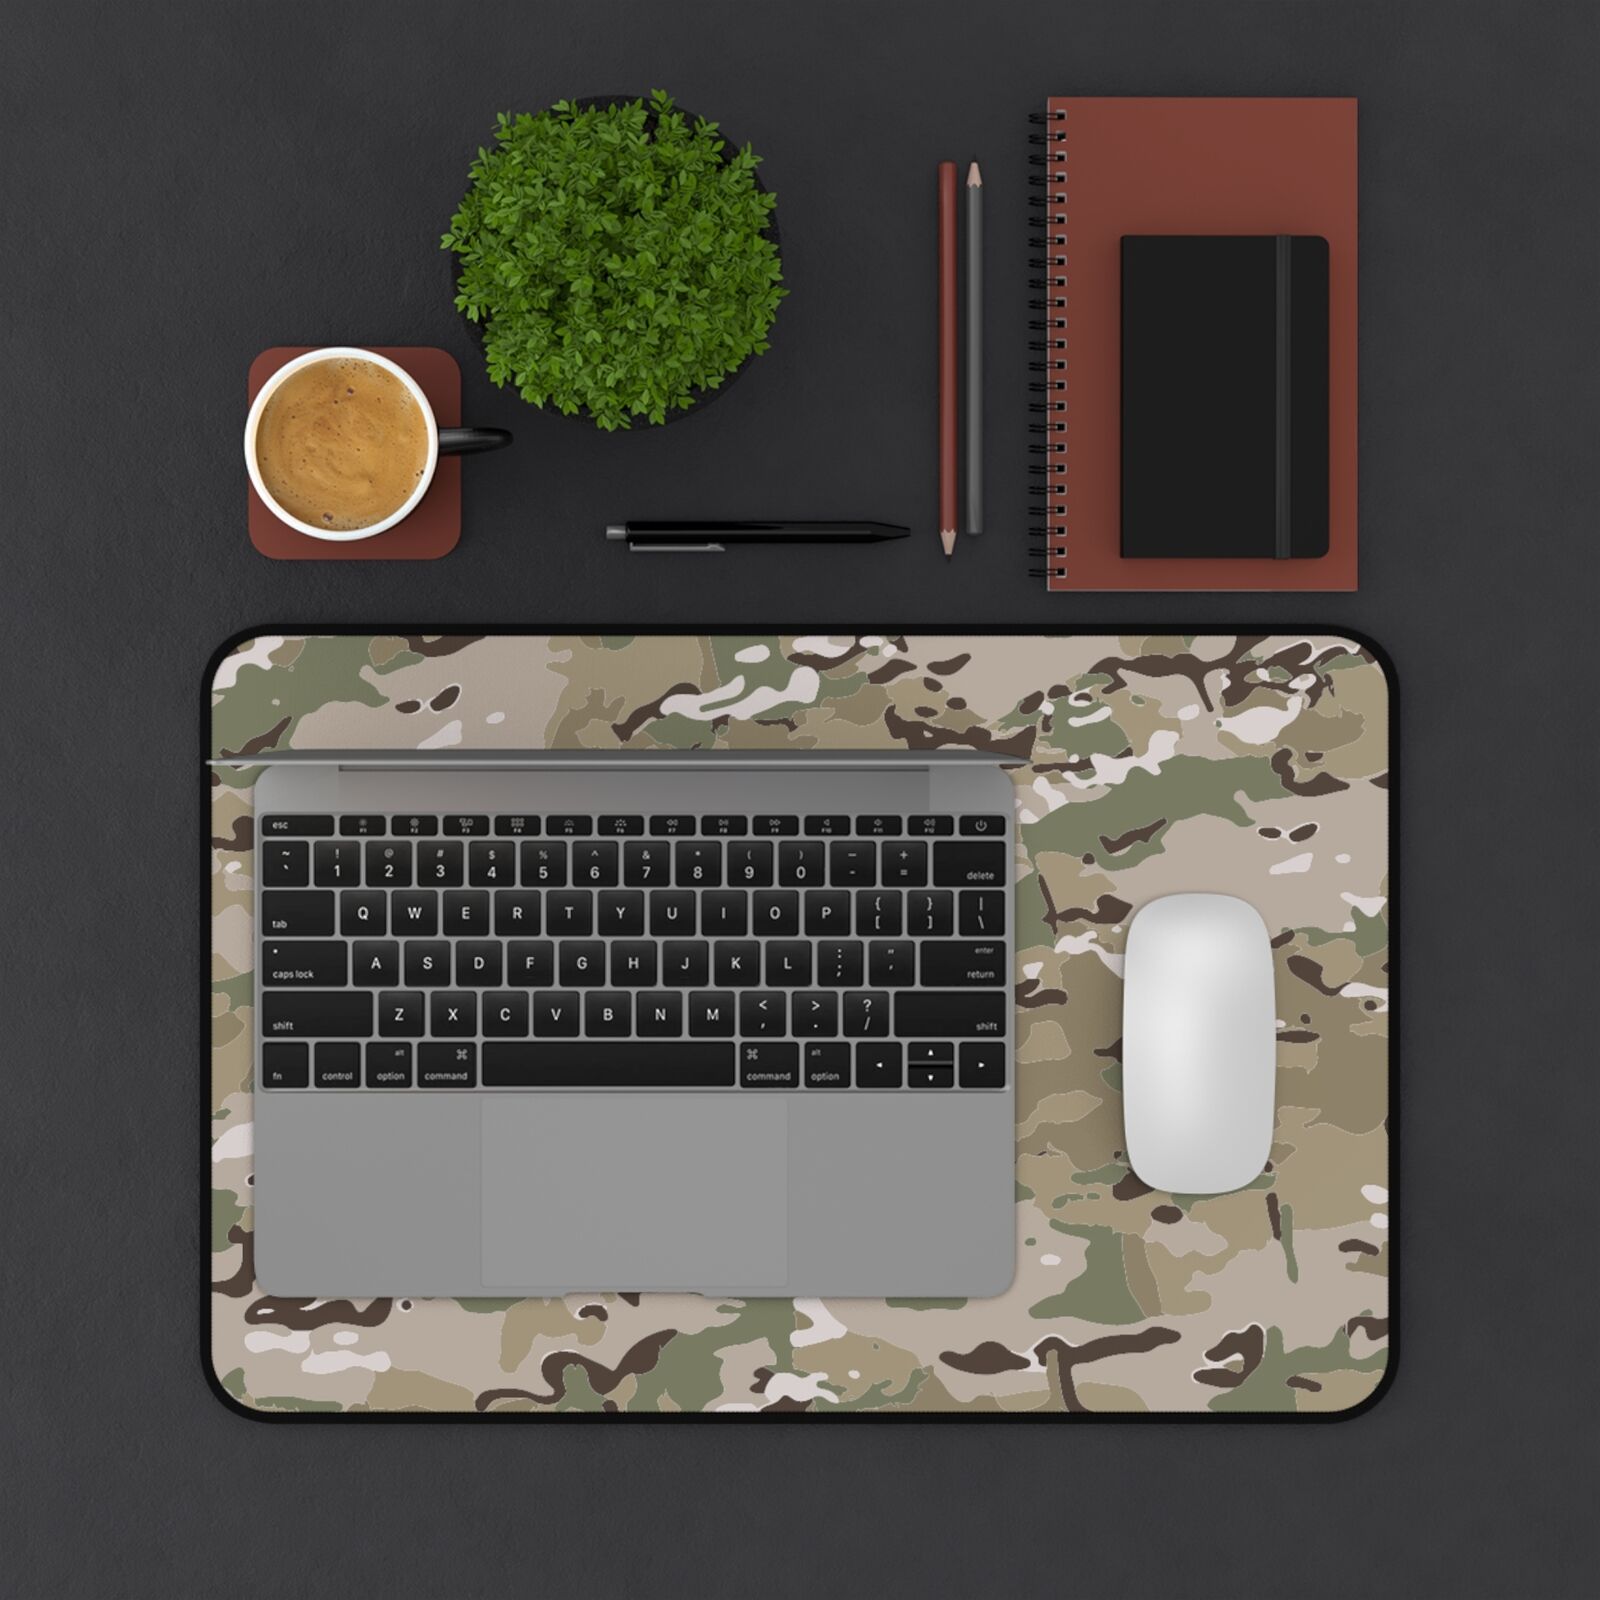 Multicam Camo - U.S. Army Special Forces - Premium Quality Desk Mat Mouse Pad